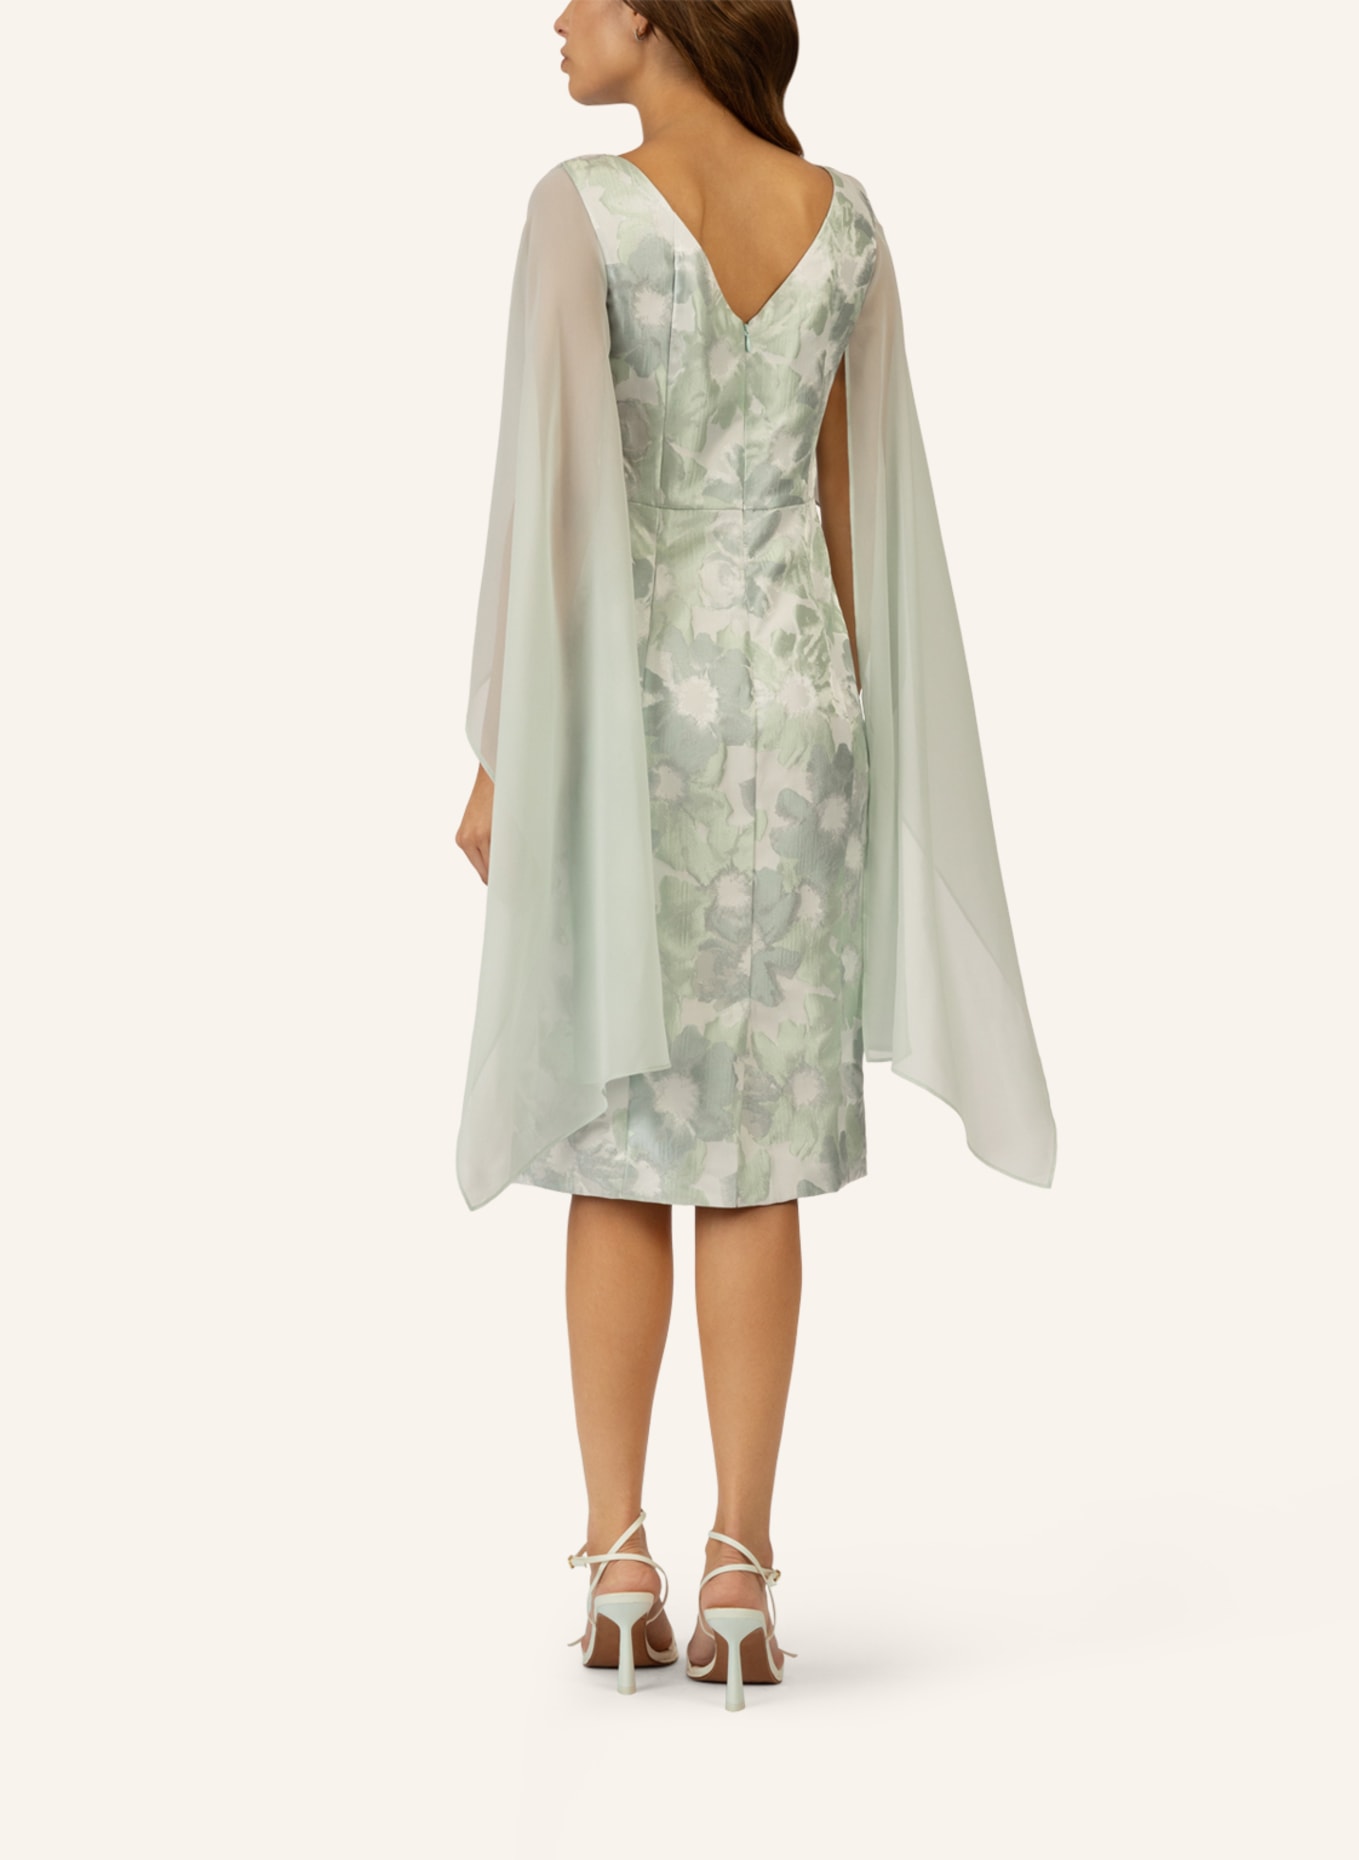 APART Jacquard Kleid mit Chiffonstola, Farbe: MINT (Bild 2)